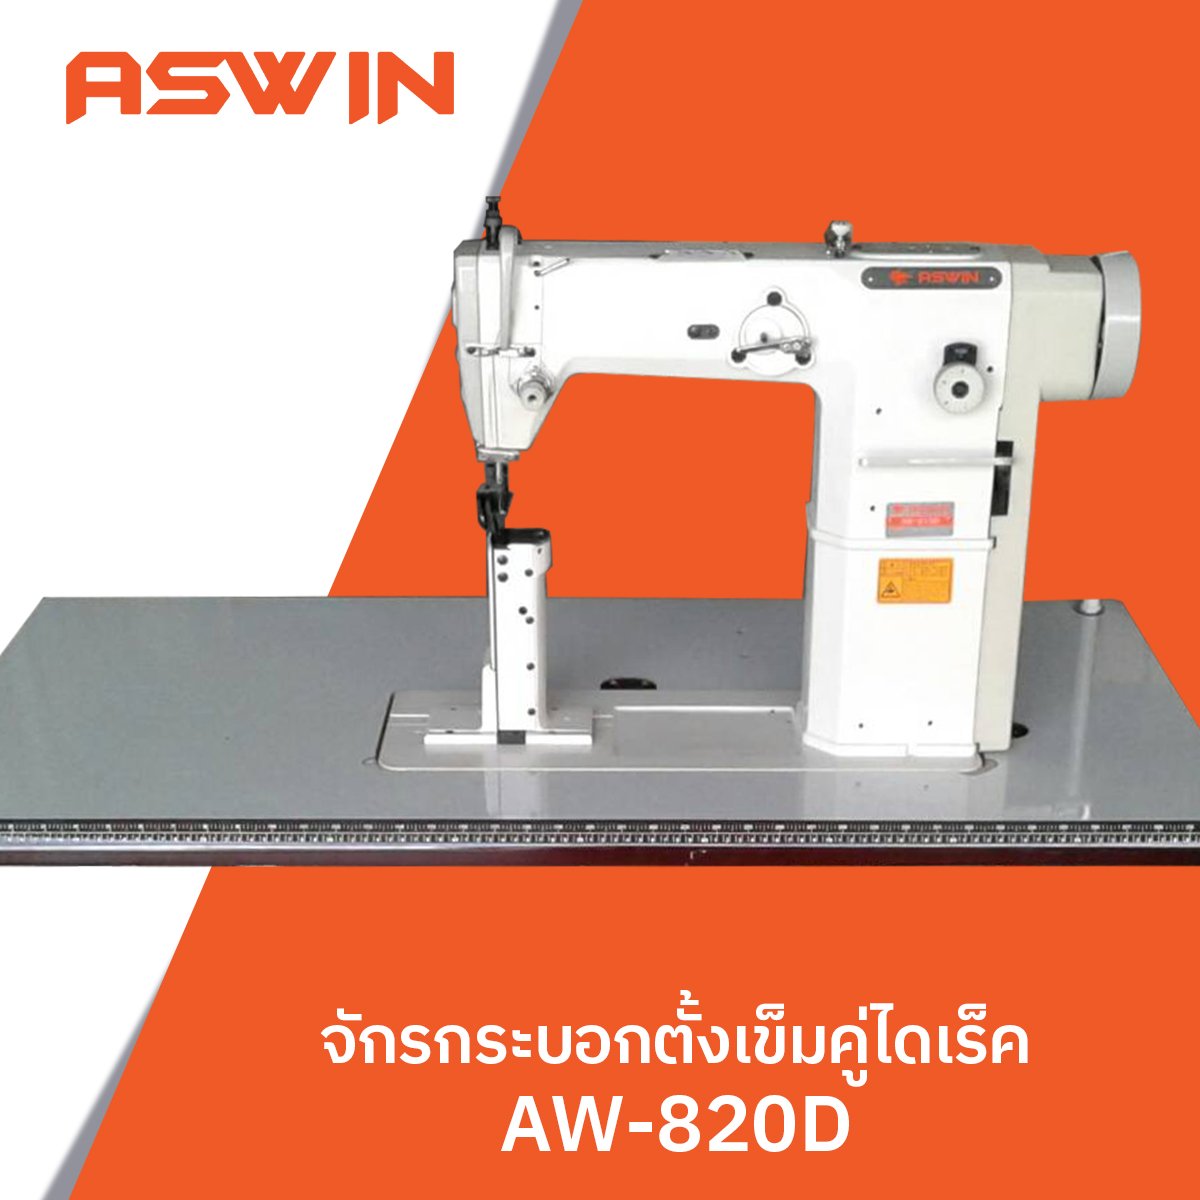 จักรกระบอกตั้งเข็มคู่ไดเร็ค ASWIN รุ่น AW-820D